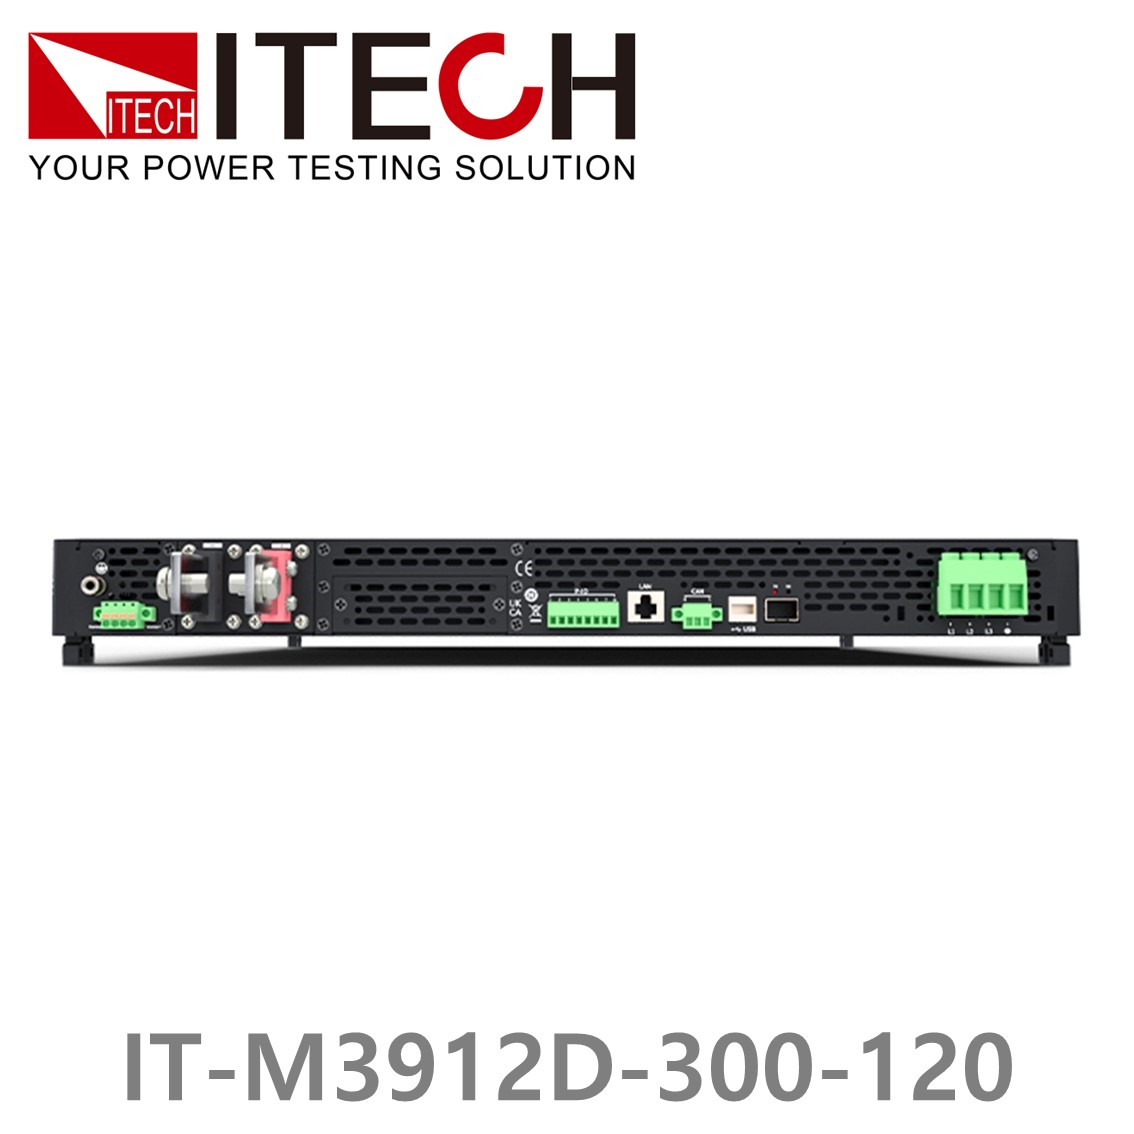 [ ITECH ] IT-M3912D-300-120 양방향 프로그래머블 DC전원공급기, DC파워서플라이